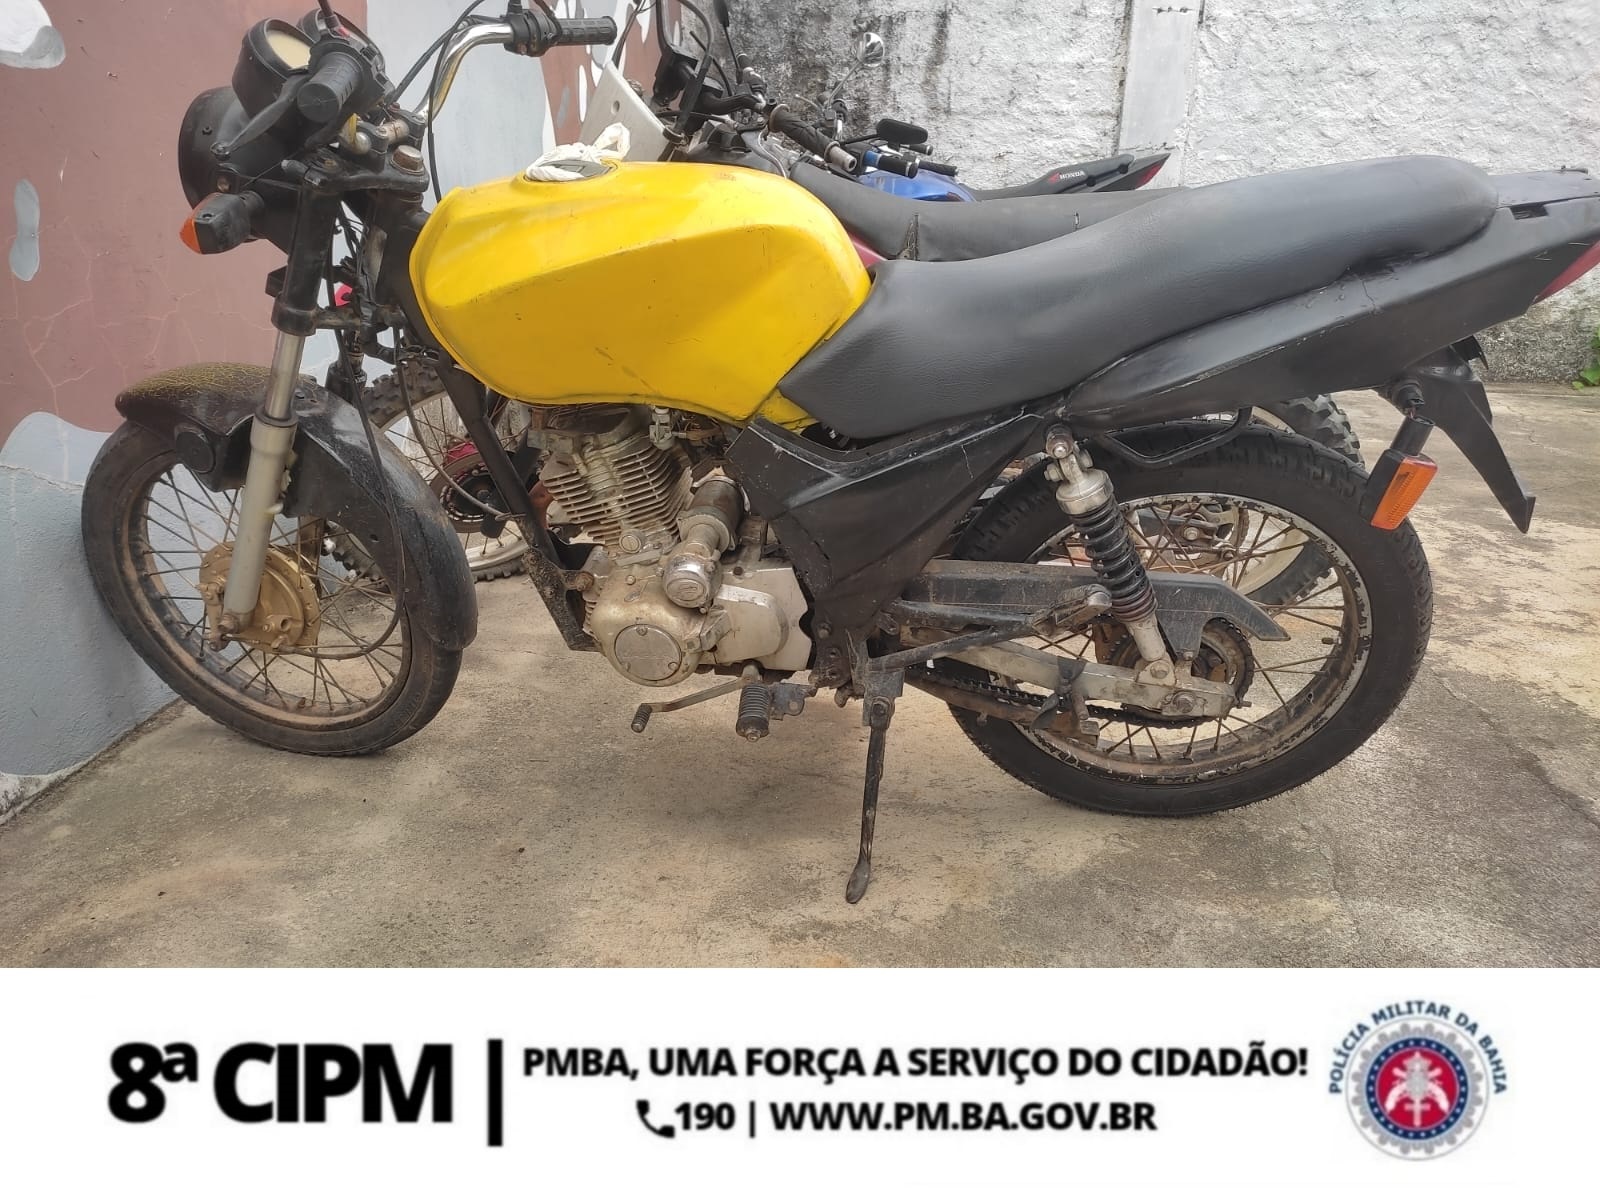 8ª CIPM: Motocilcleta Com Numeração do chassis Suprimida é Recolhida e Conduzida a DP de Itambé